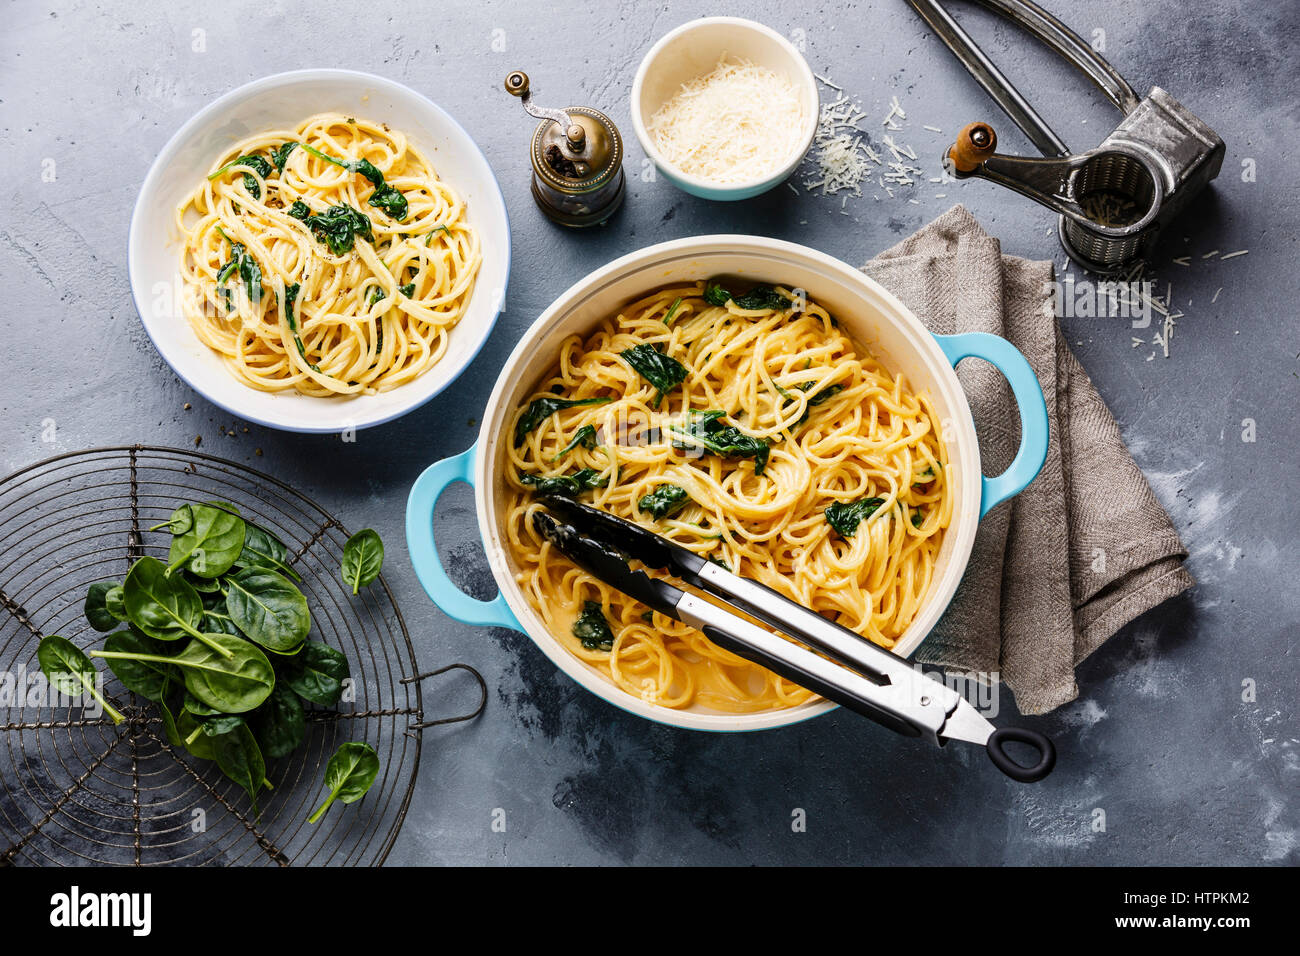 Espaguetis con espinacas y salsa de crema en la cacerola de fondo de hormigón gris Foto de stock